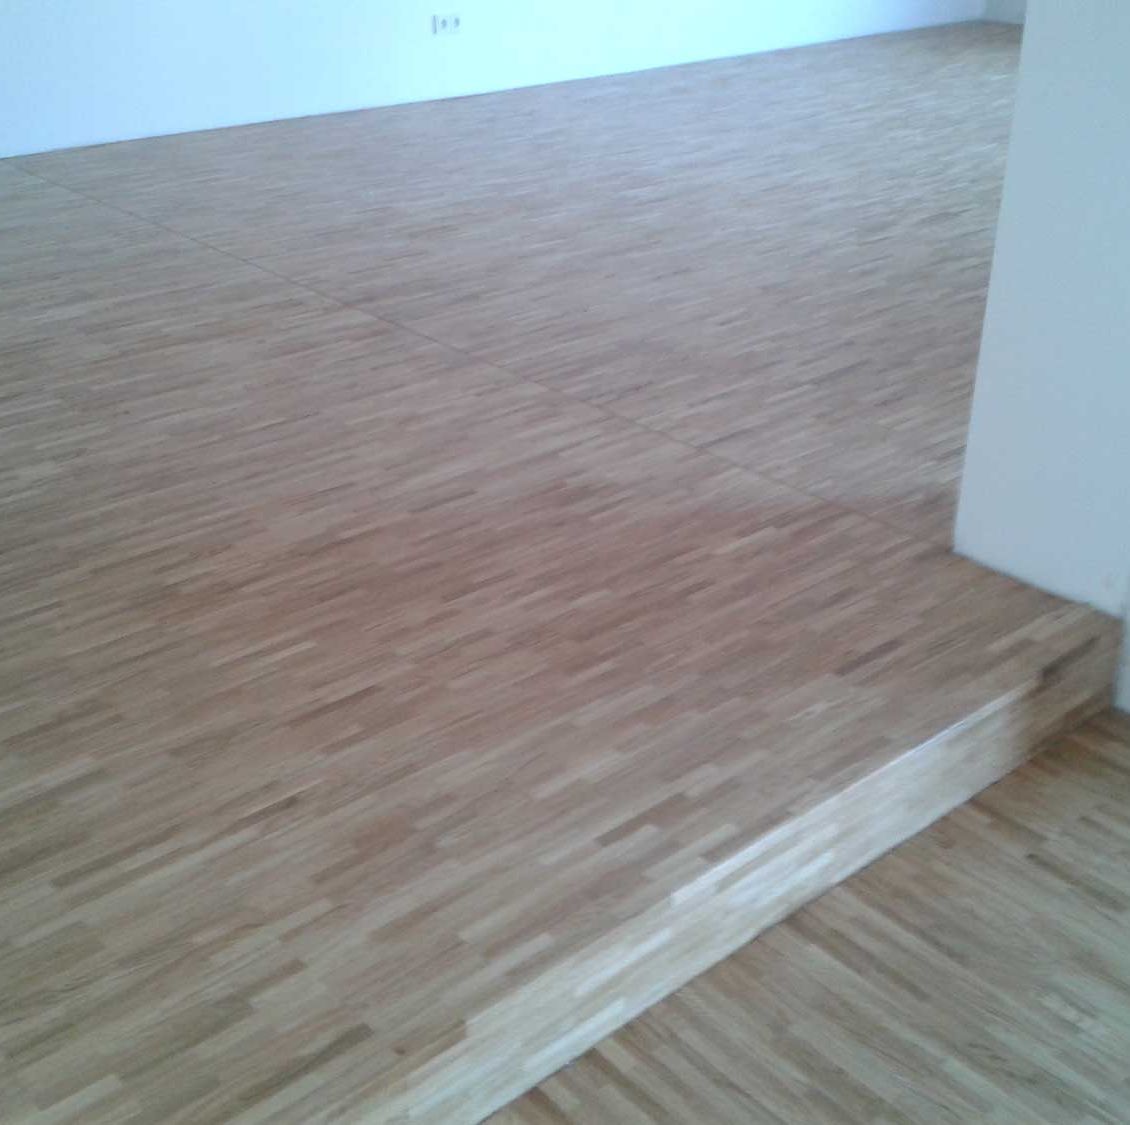 Referenzbild von Fußböden & Holzarbeiten der Firma Fubotec aus Clausthal-Zellerfeld